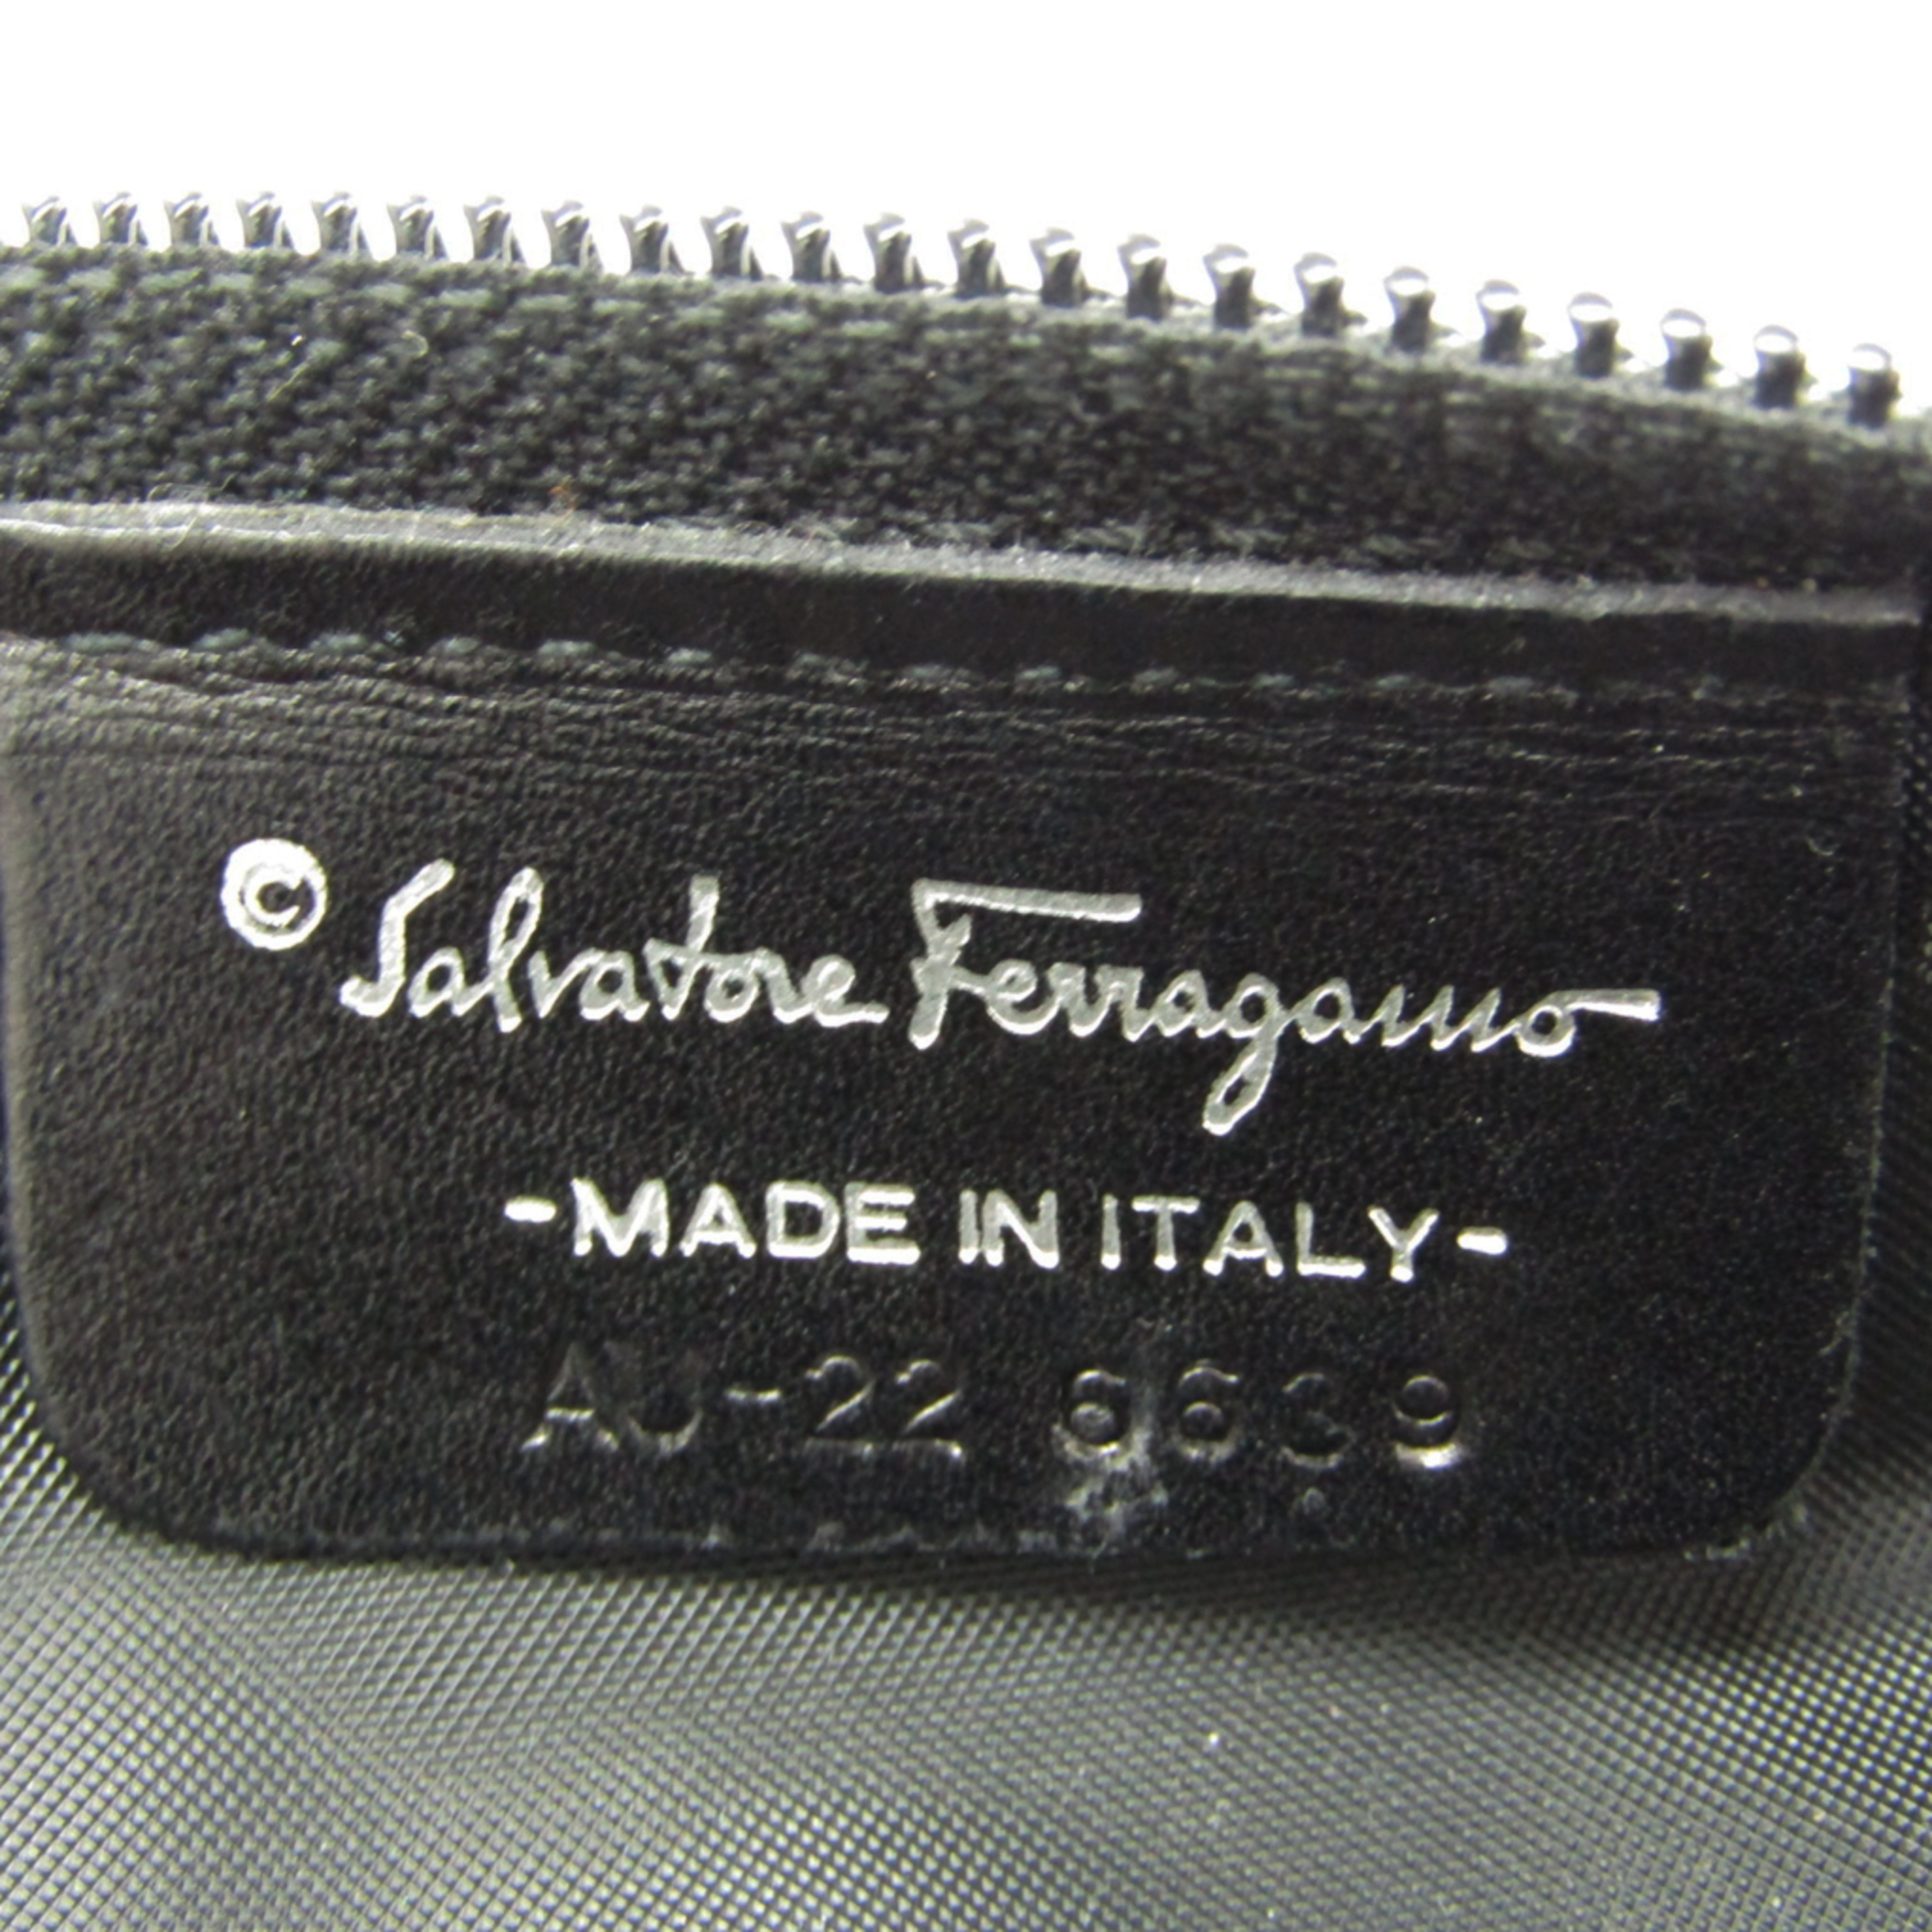 Salvatore Ferragamo Cosmetic Pouch Makeup Pouch AU-22 6639 Women's Leather,Nylon Canvas Pouch Black